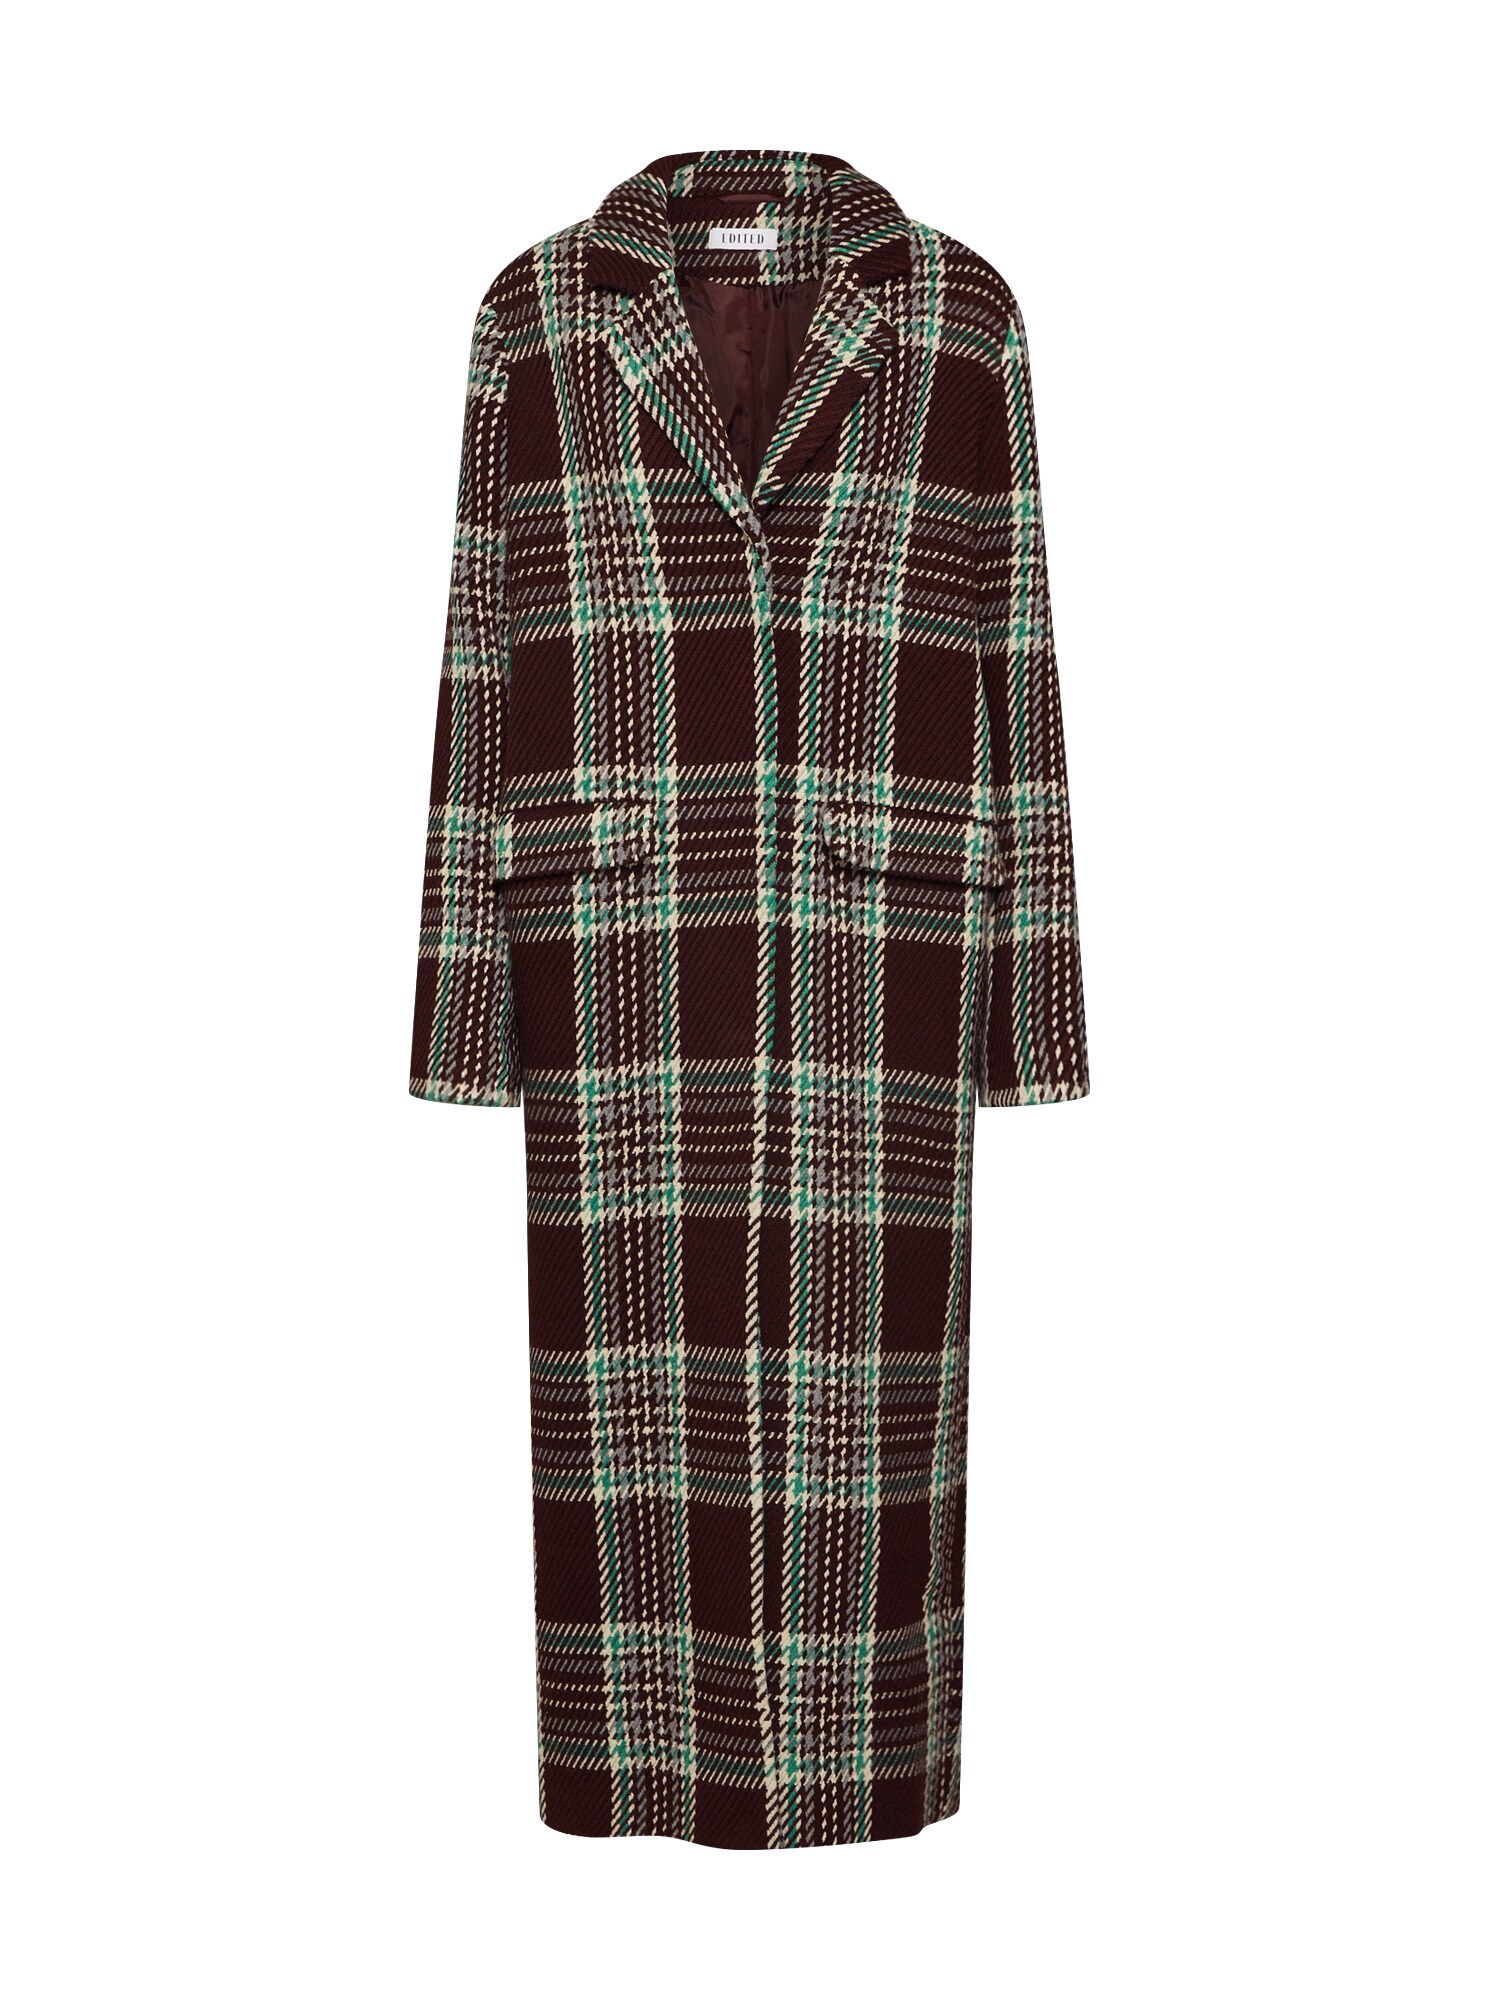 EDITED Rudeninis-žieminis paltas 'Frida'  kaštoninė spalva / žalia / mišrios spalvos / vyšninė spalva